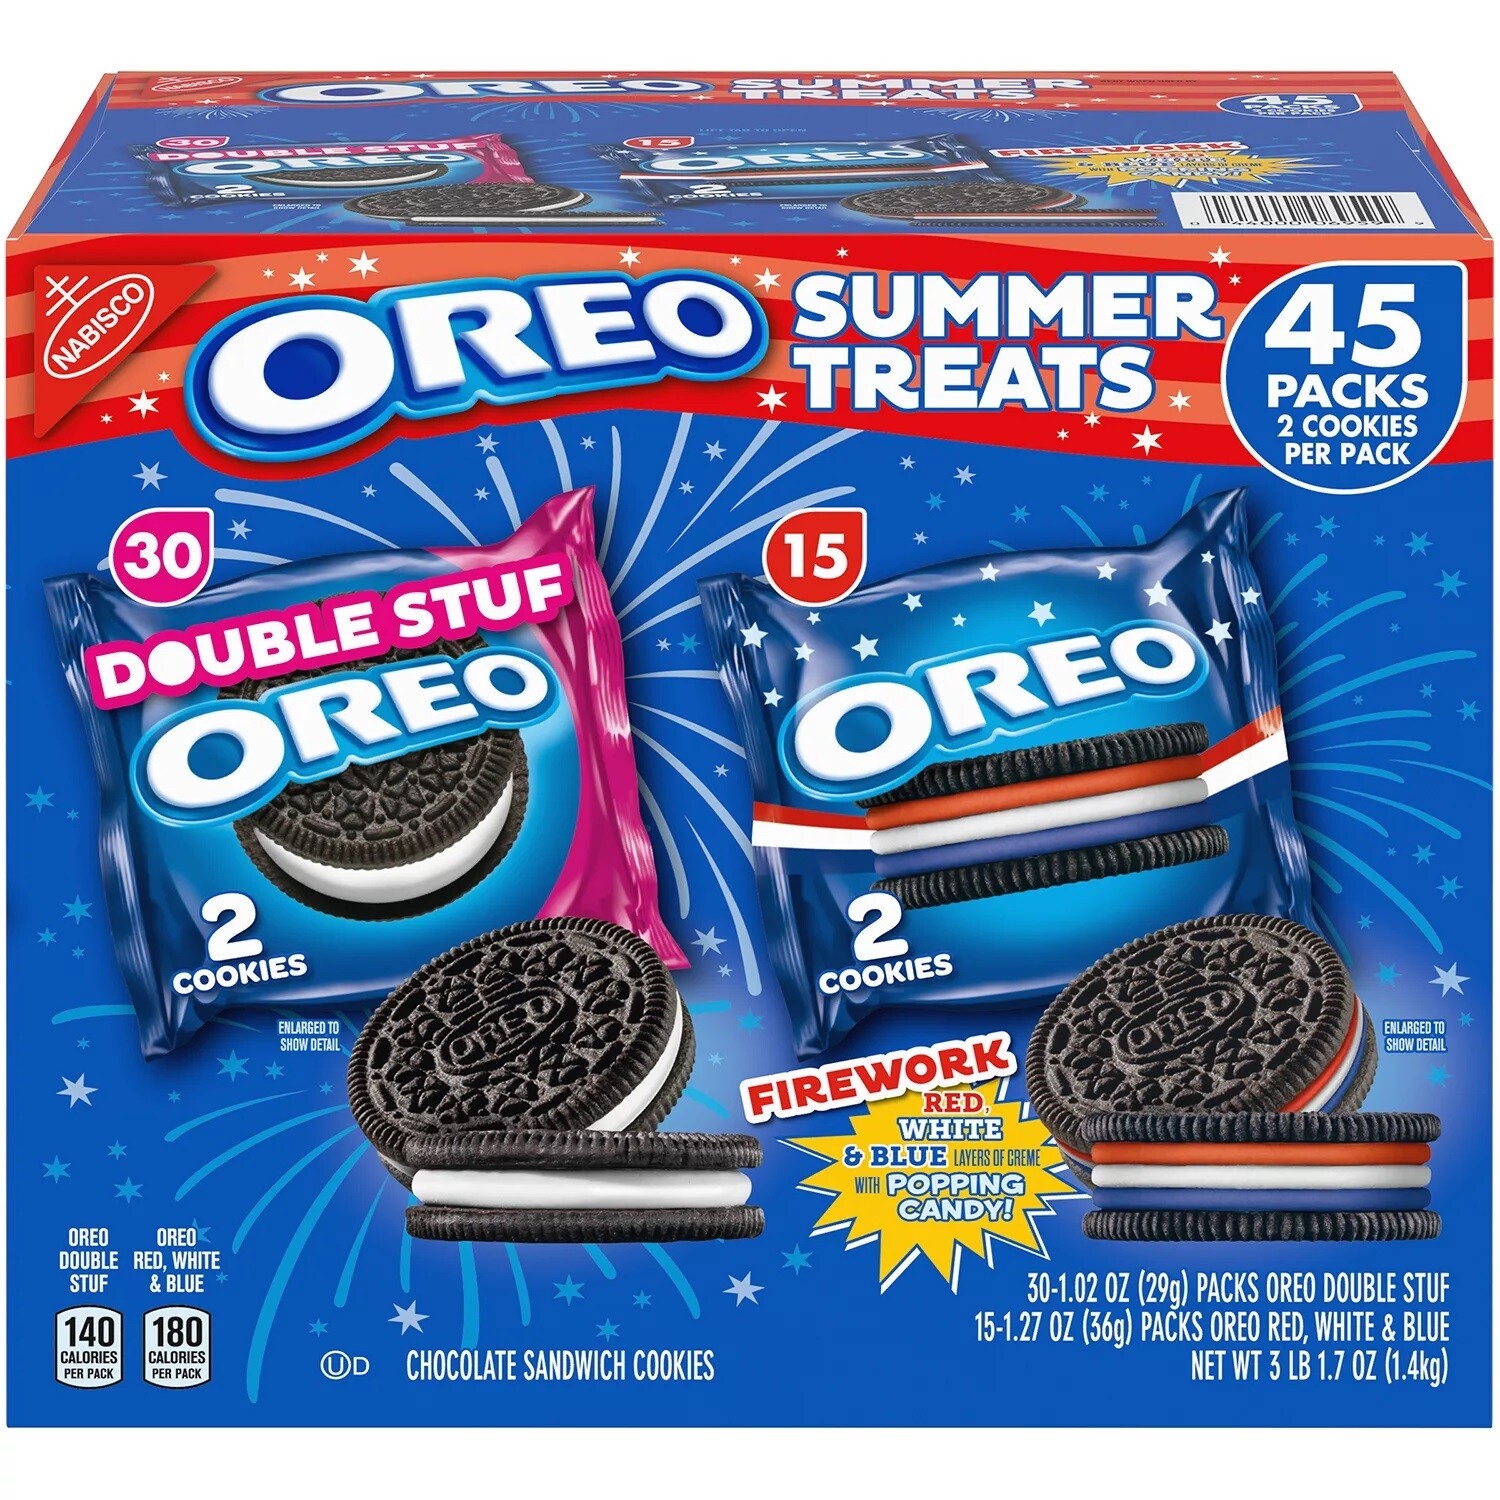 Oreo Summer Treats Variety Box 45ct (30 Double Stuf Oreo 2ct,
          15 Red White & Blue Oreos 2ct)